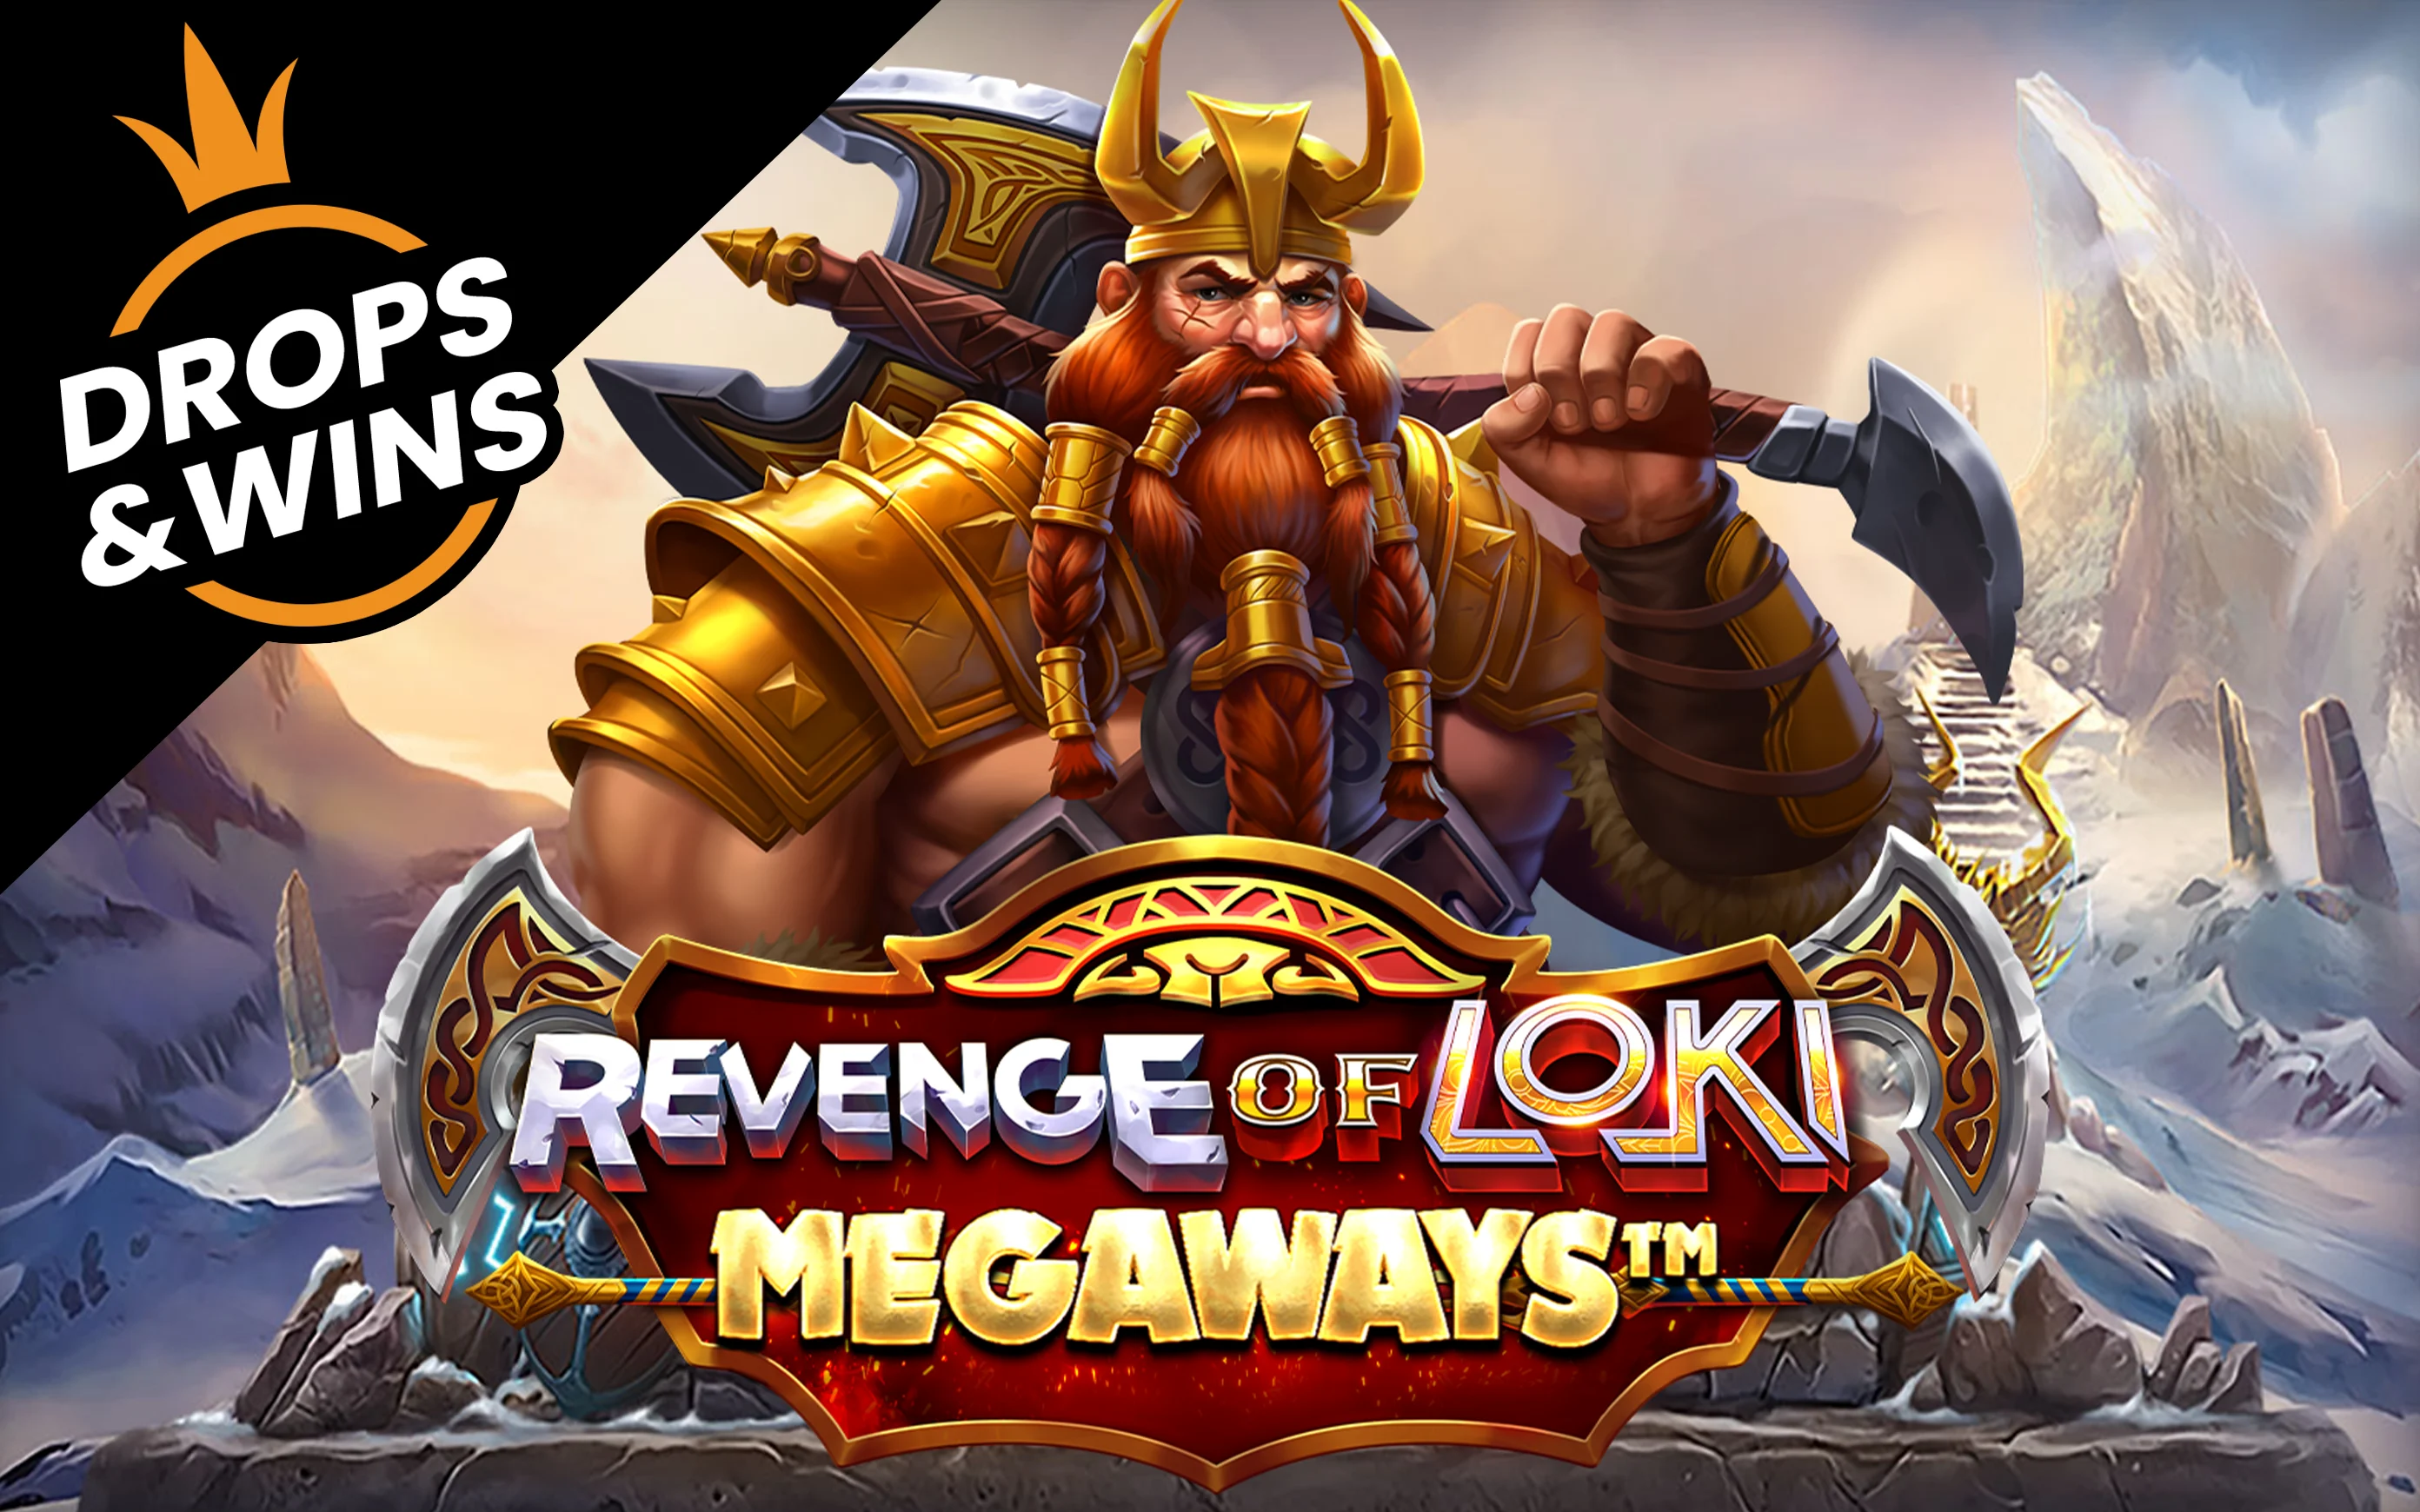 Jouer à Revenge of Loki Megaways sur le casino en ligne Starcasino.be